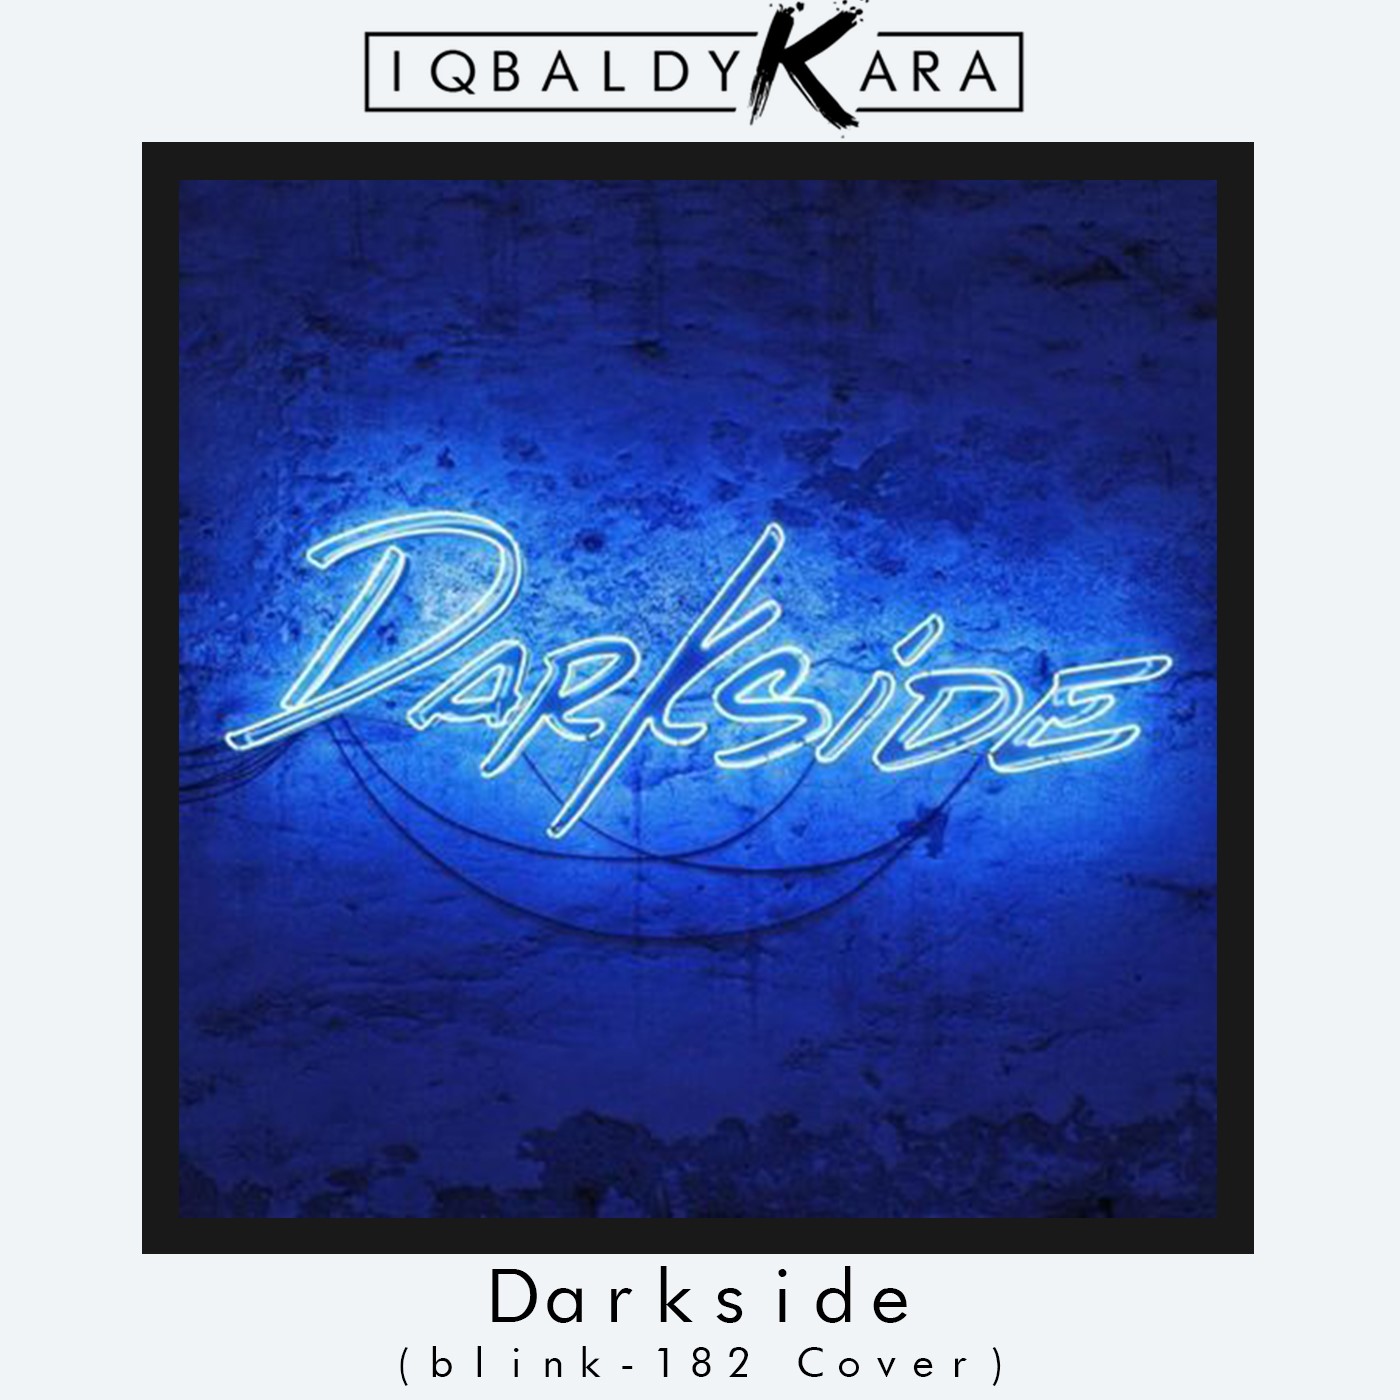 I-download Darkside (blink-182 Cover)